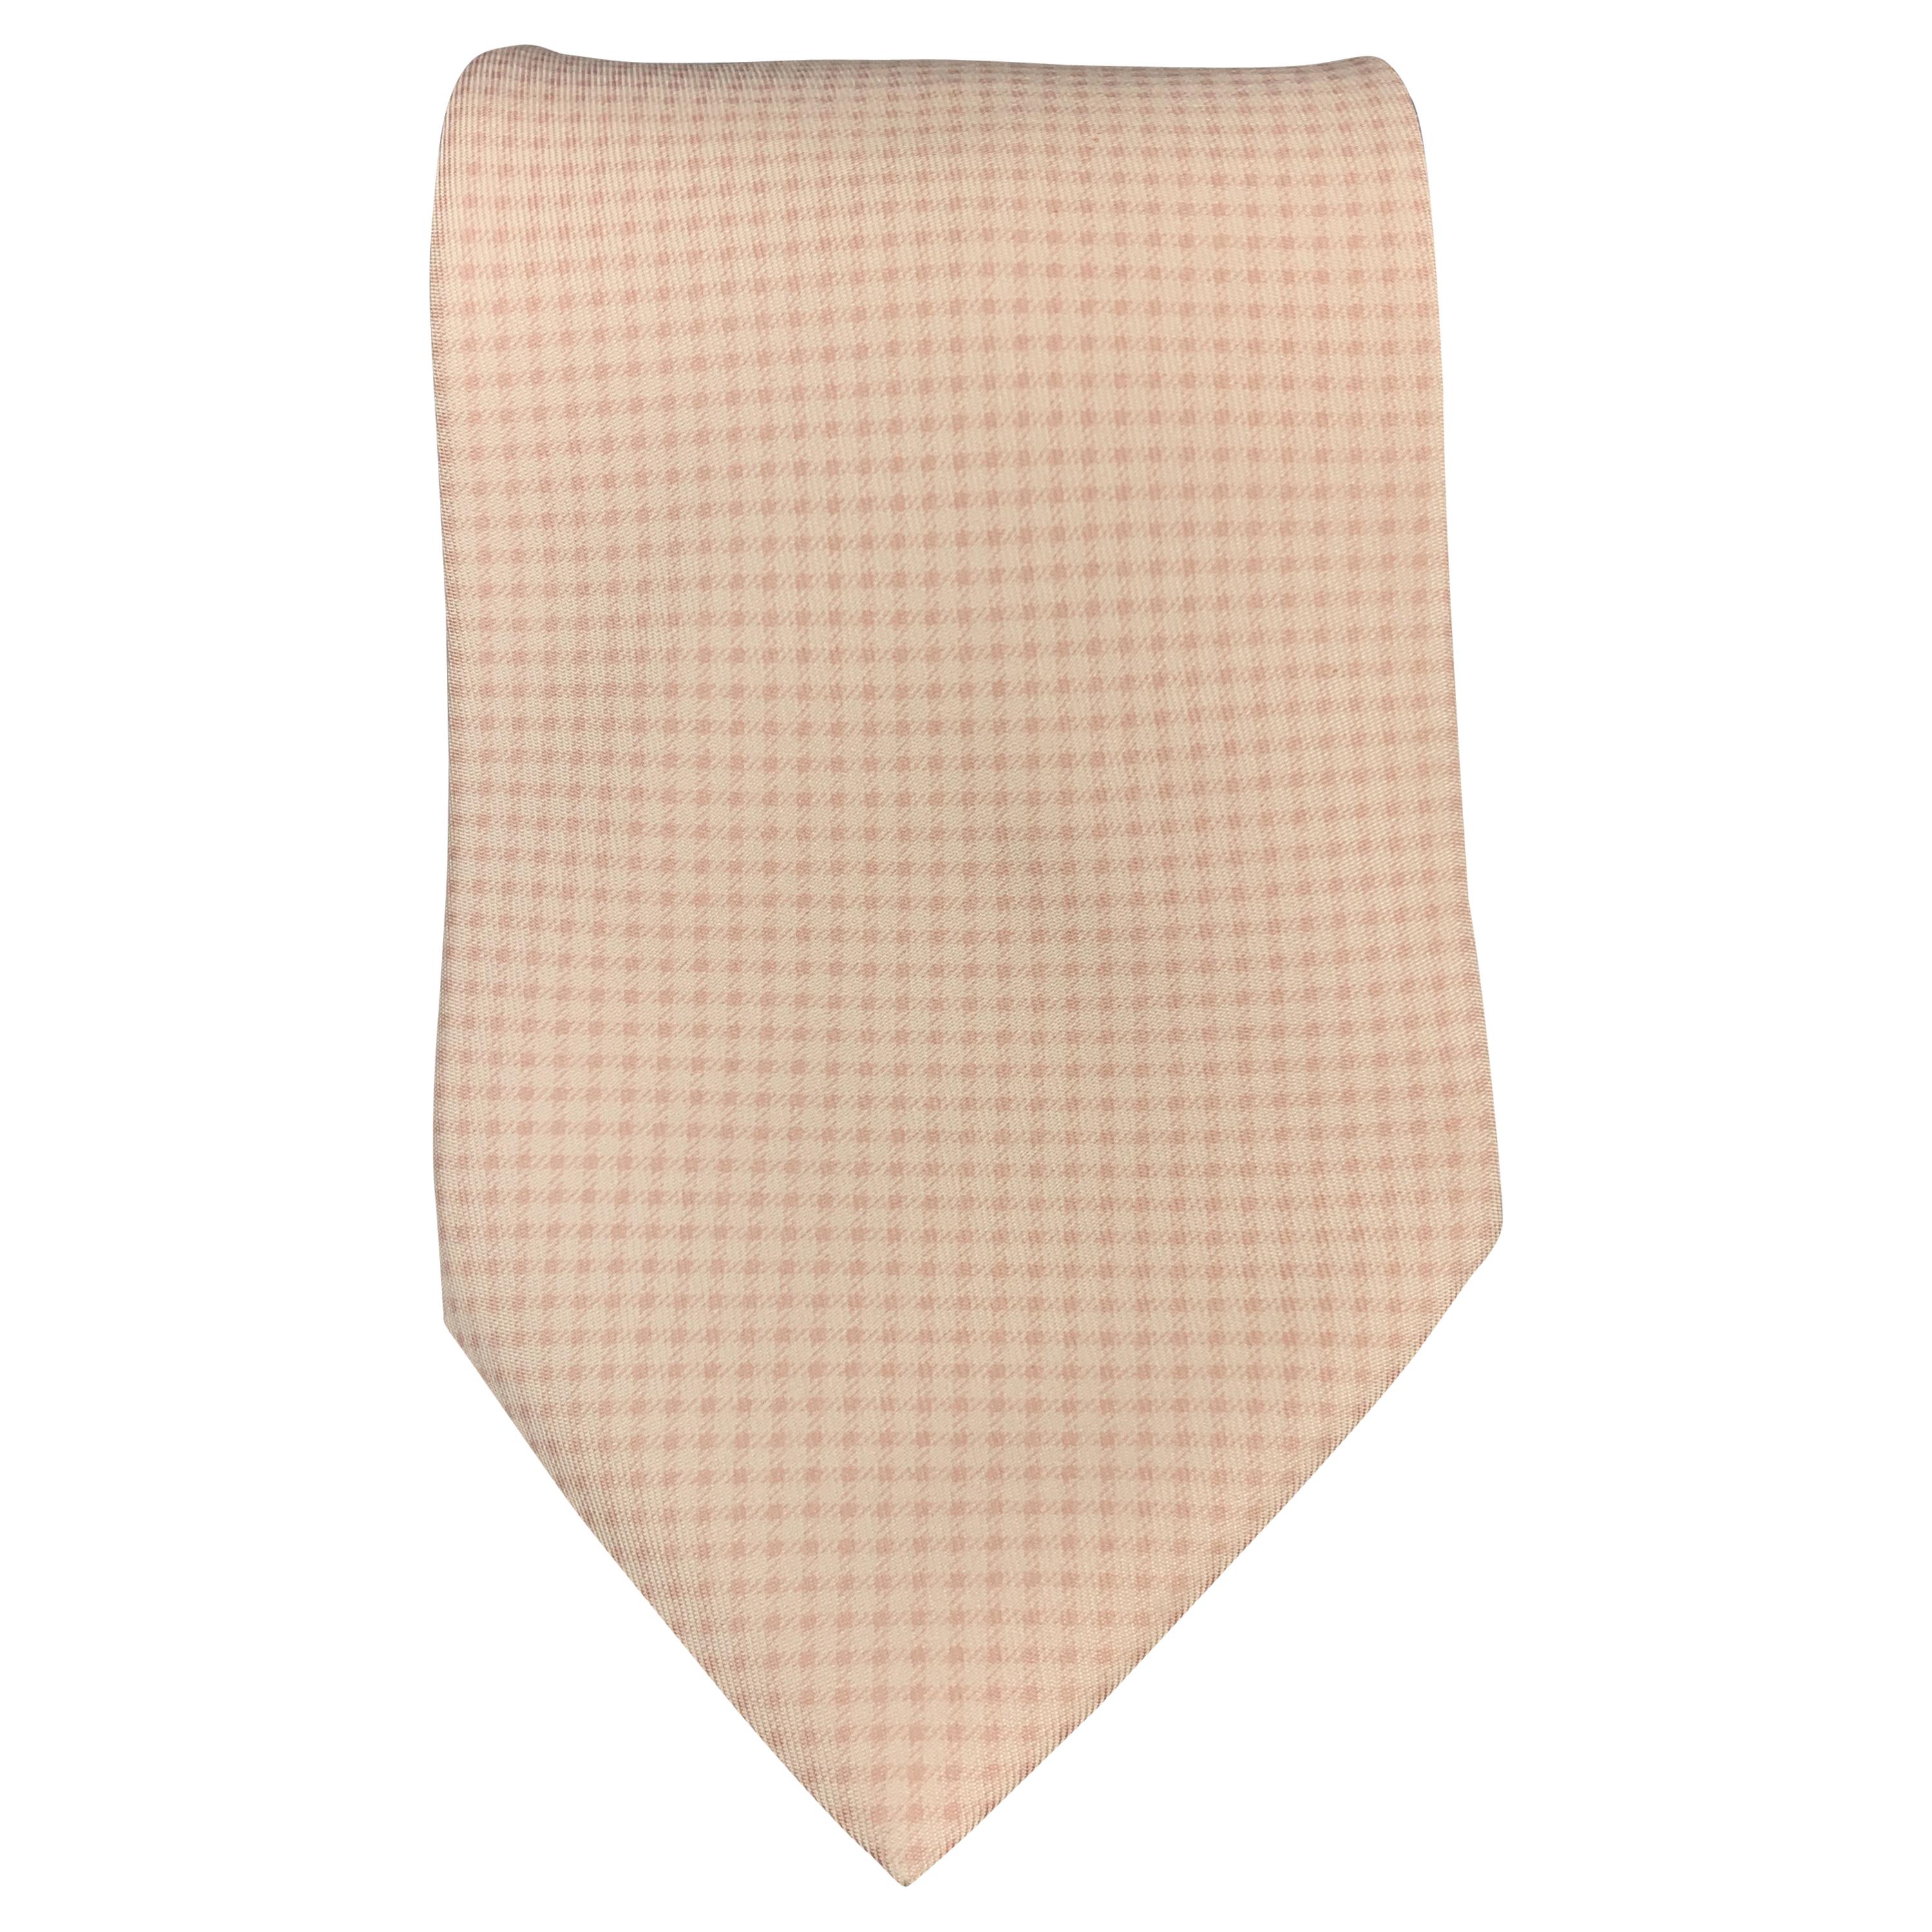 HERMES Pale Pink Micro Gingham Silk Tie